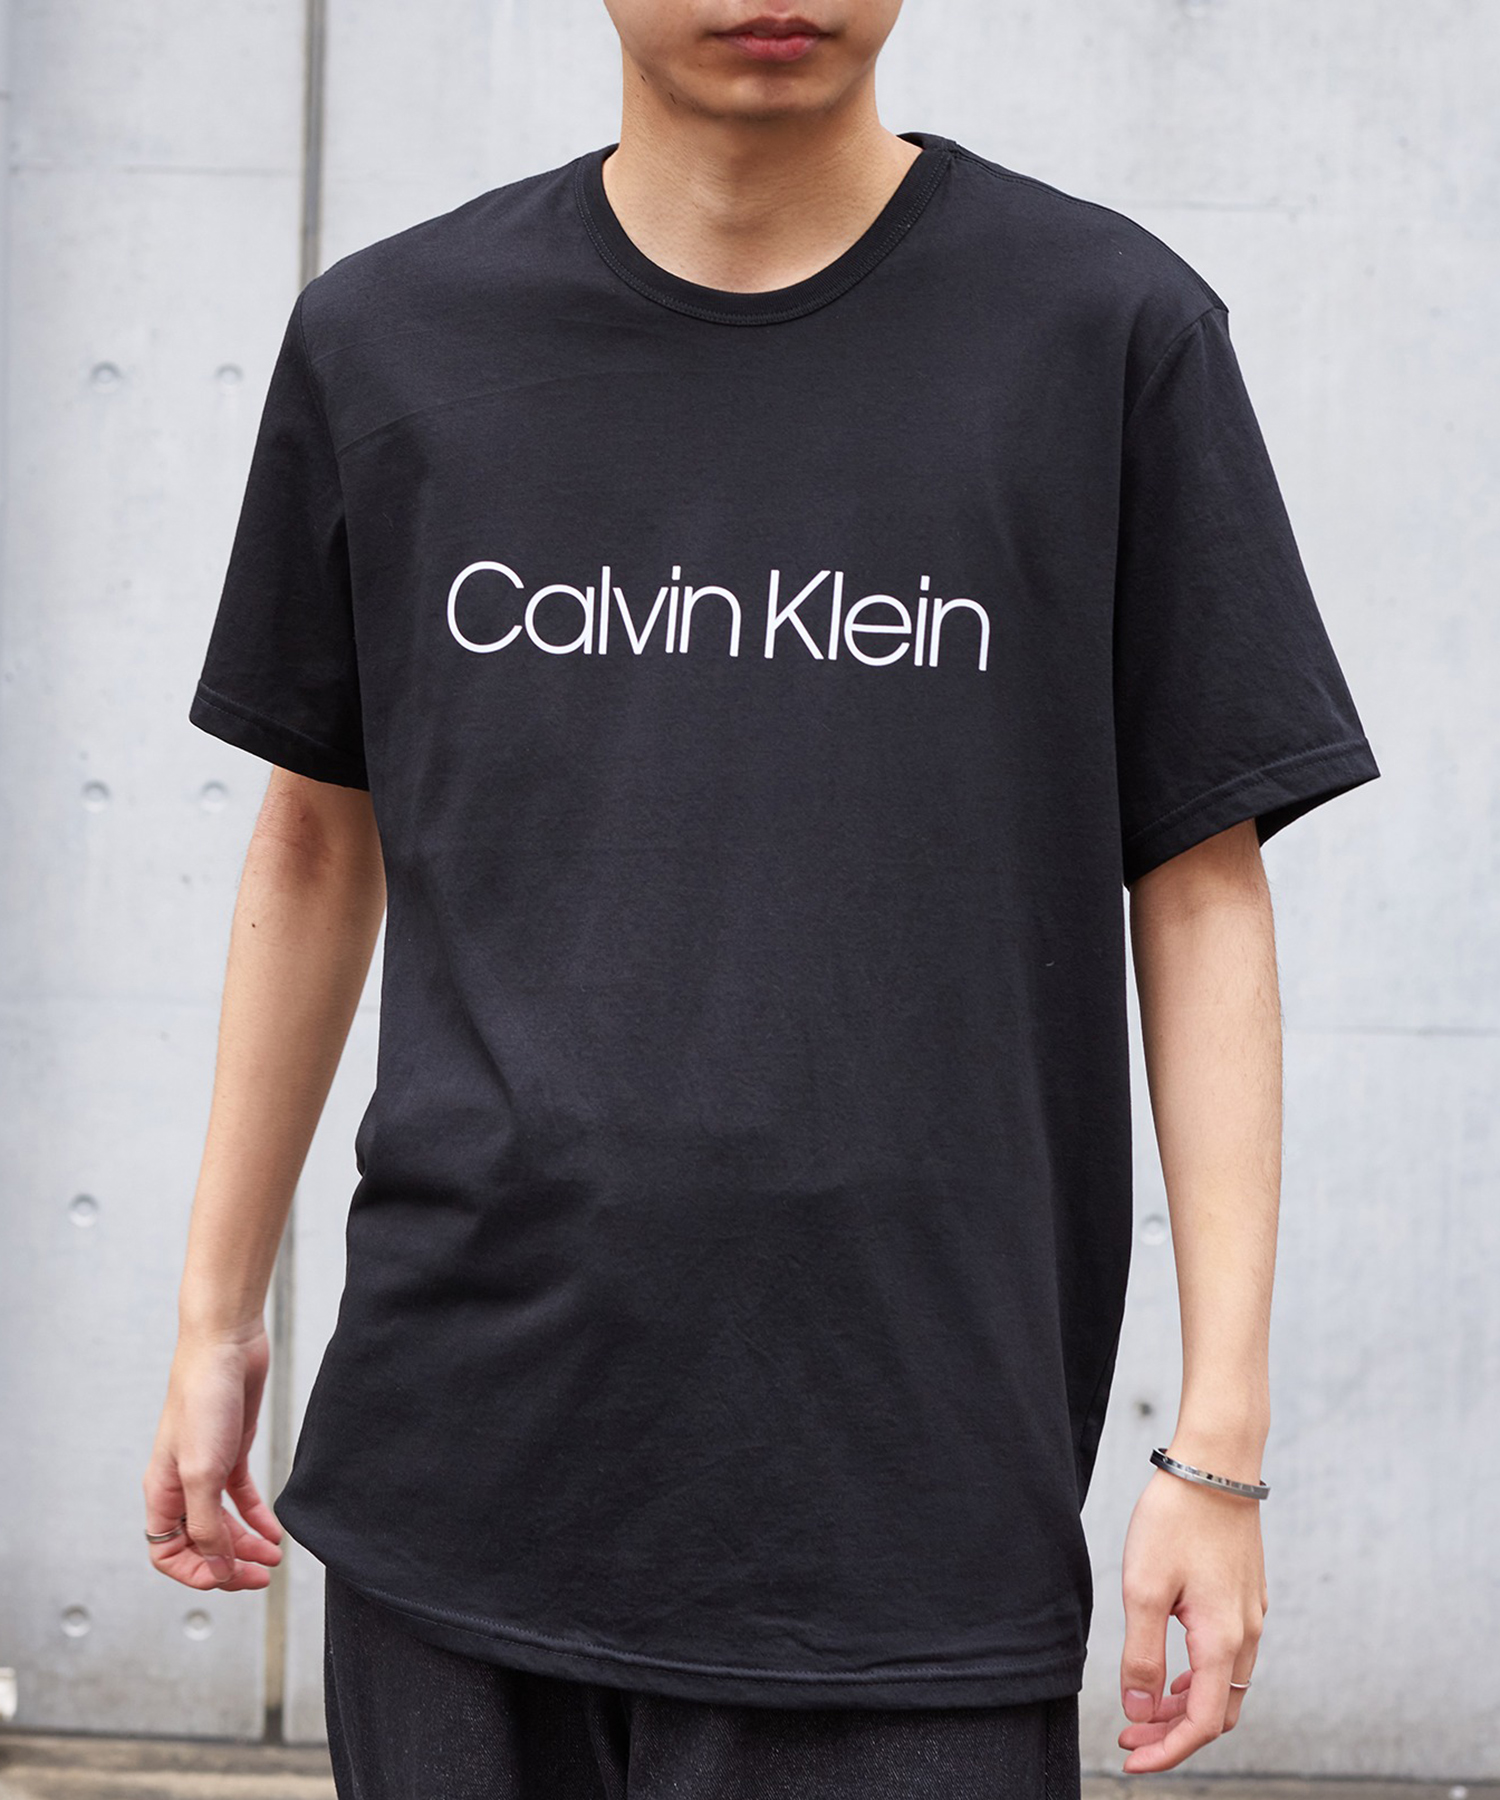 Calvin Klein カルバンクライン サンセット プリント Tシャツ 黒.